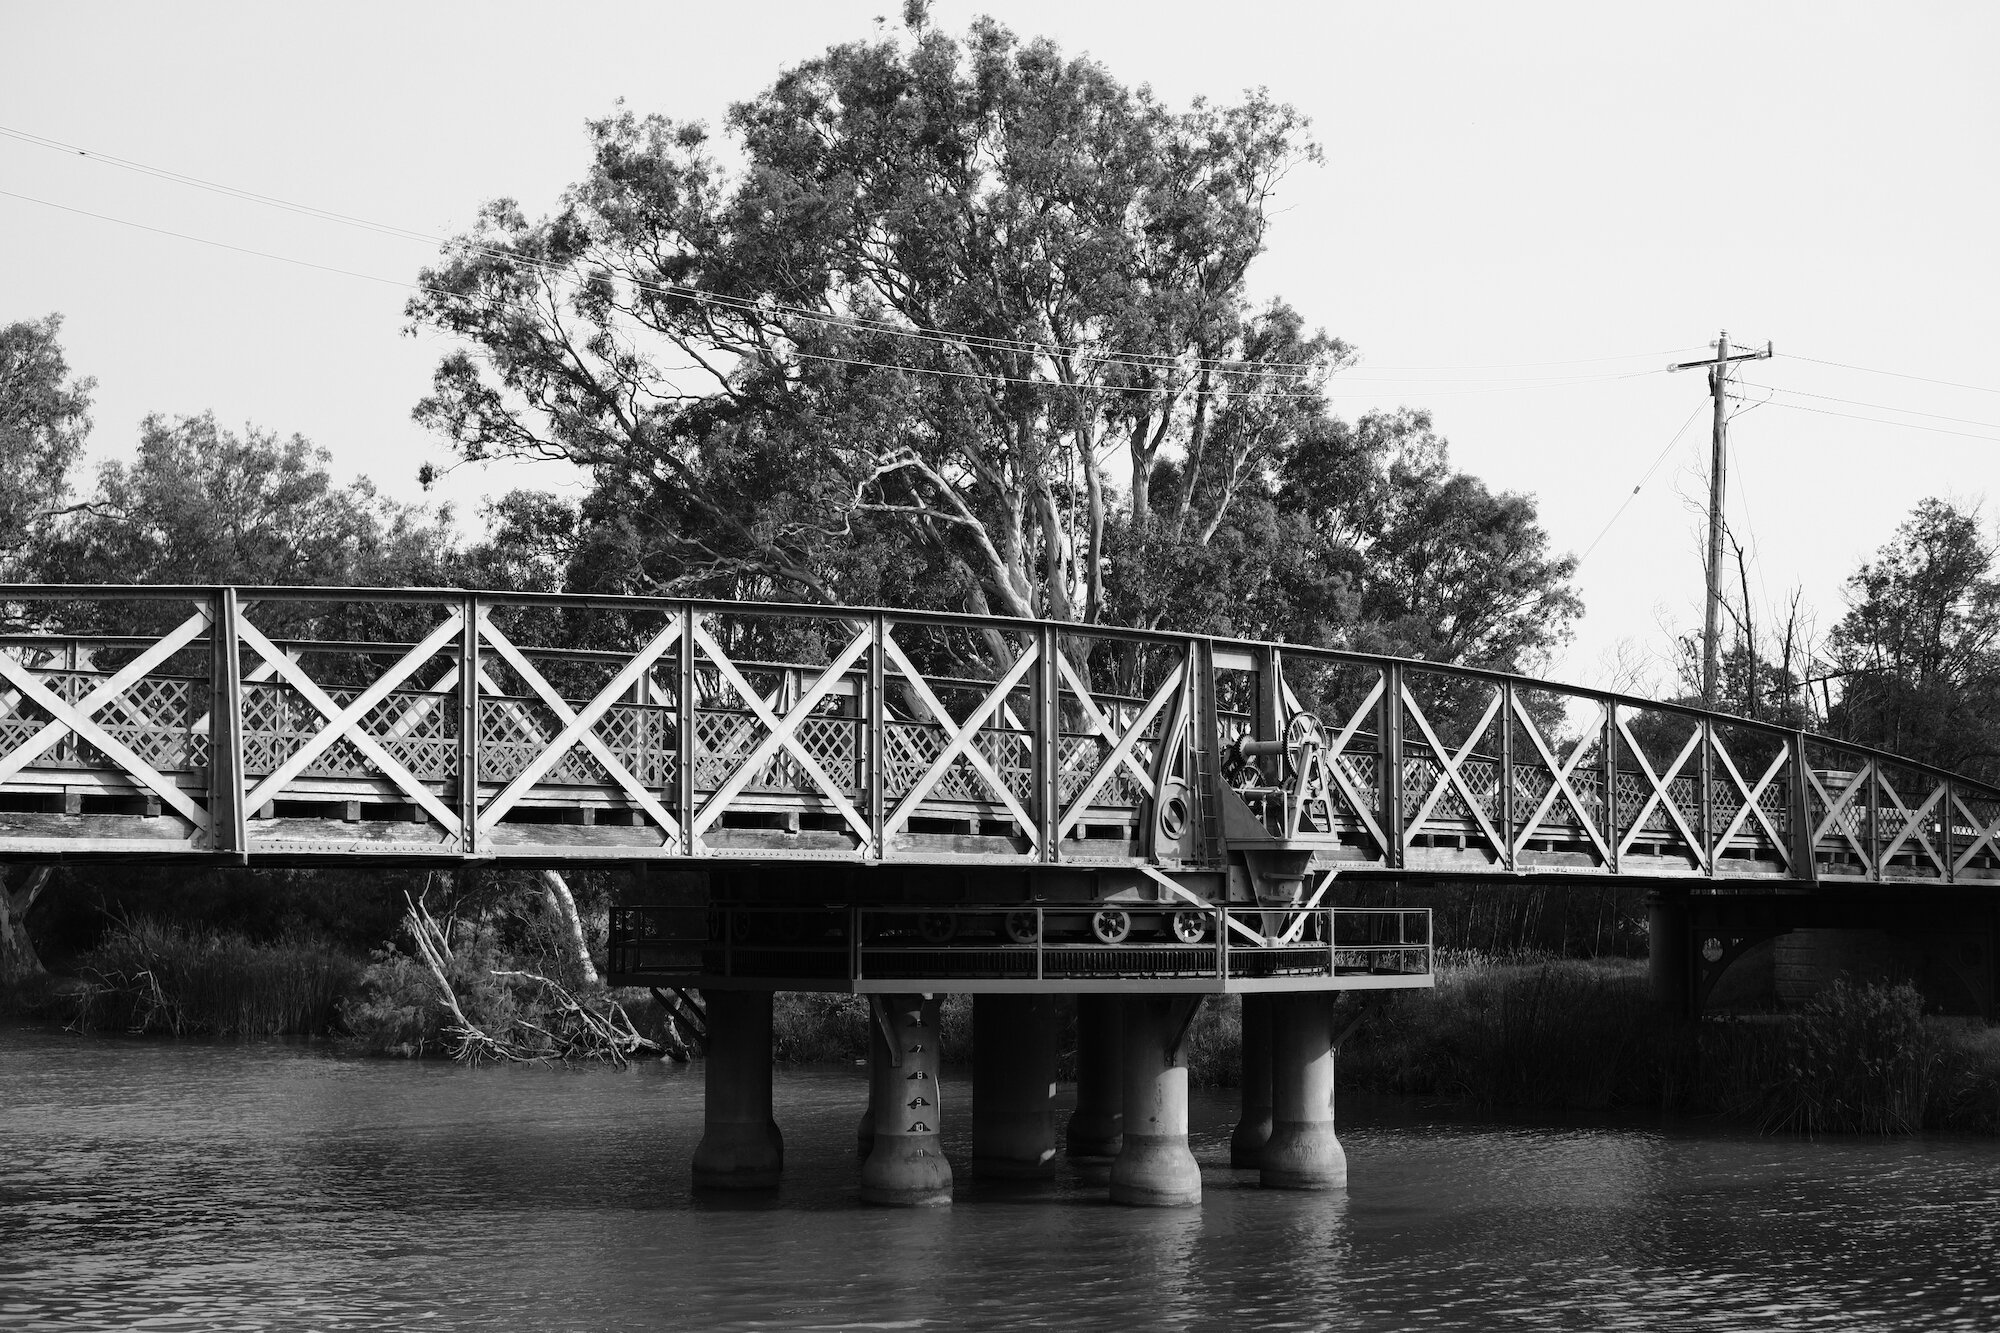 La Trobe Swing Bridge, near Sale, Victoria